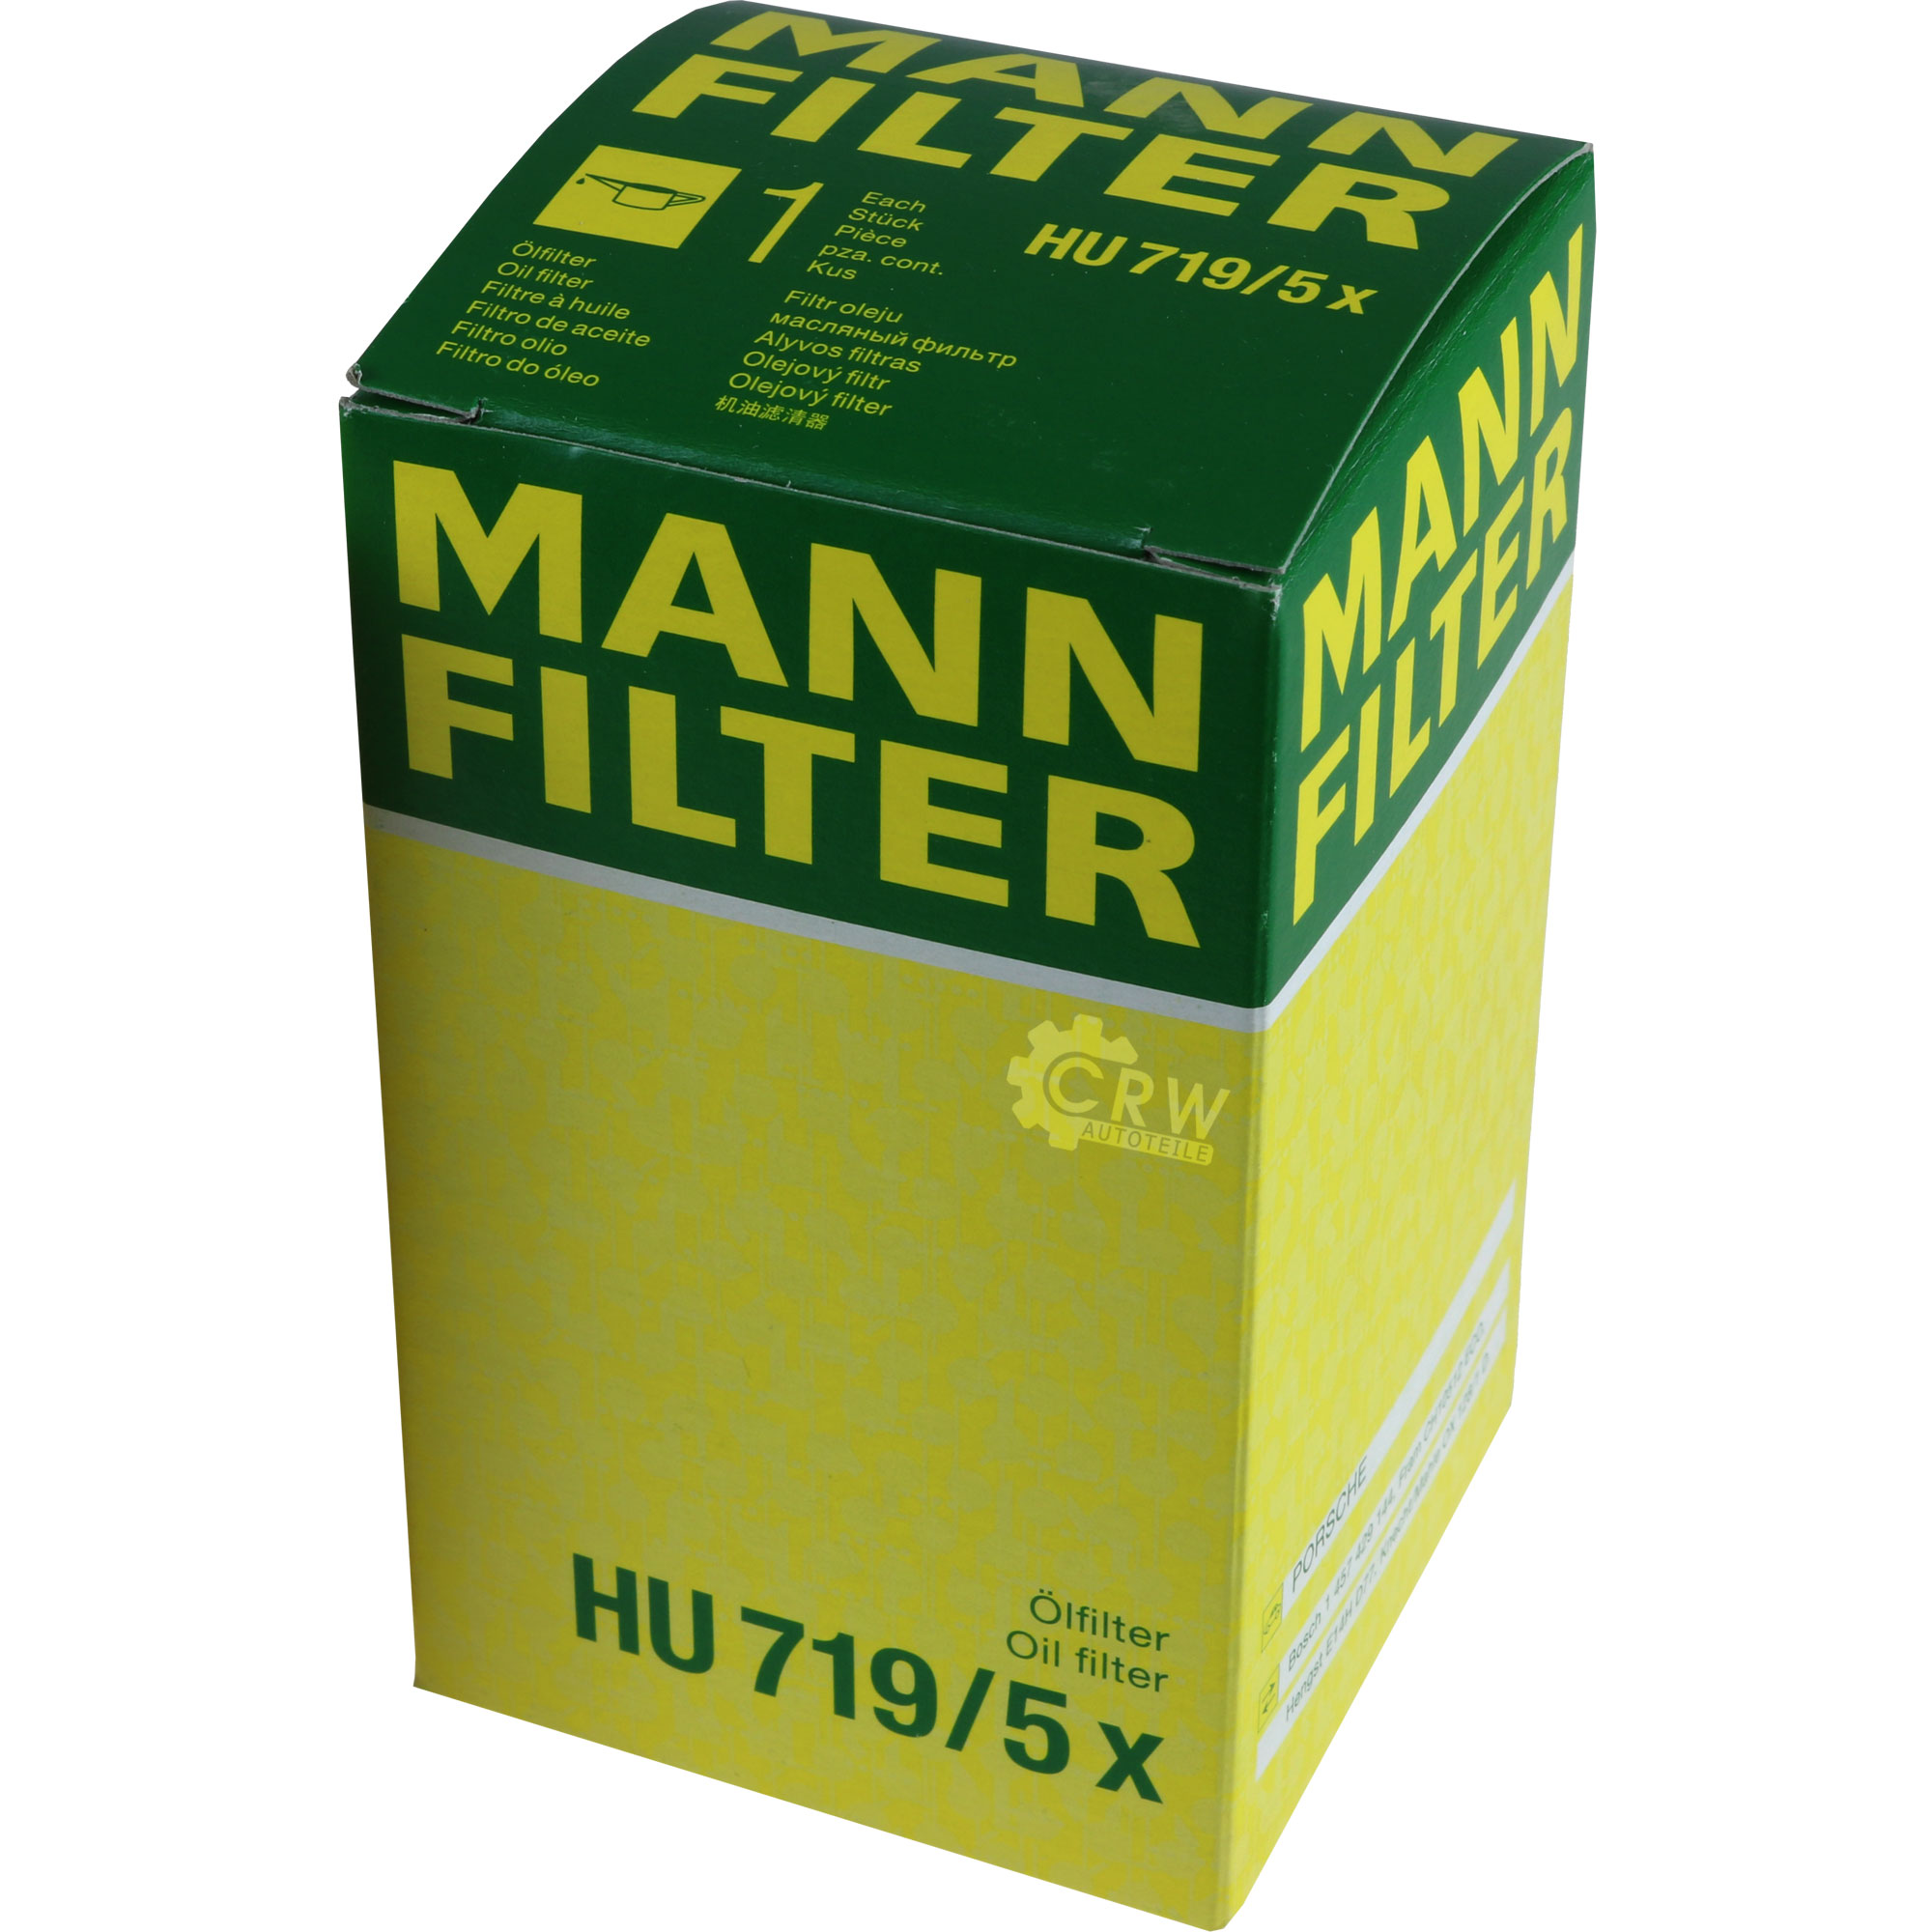 MANN-FILTER Ölfilter HU 719/5 x Oil Filter